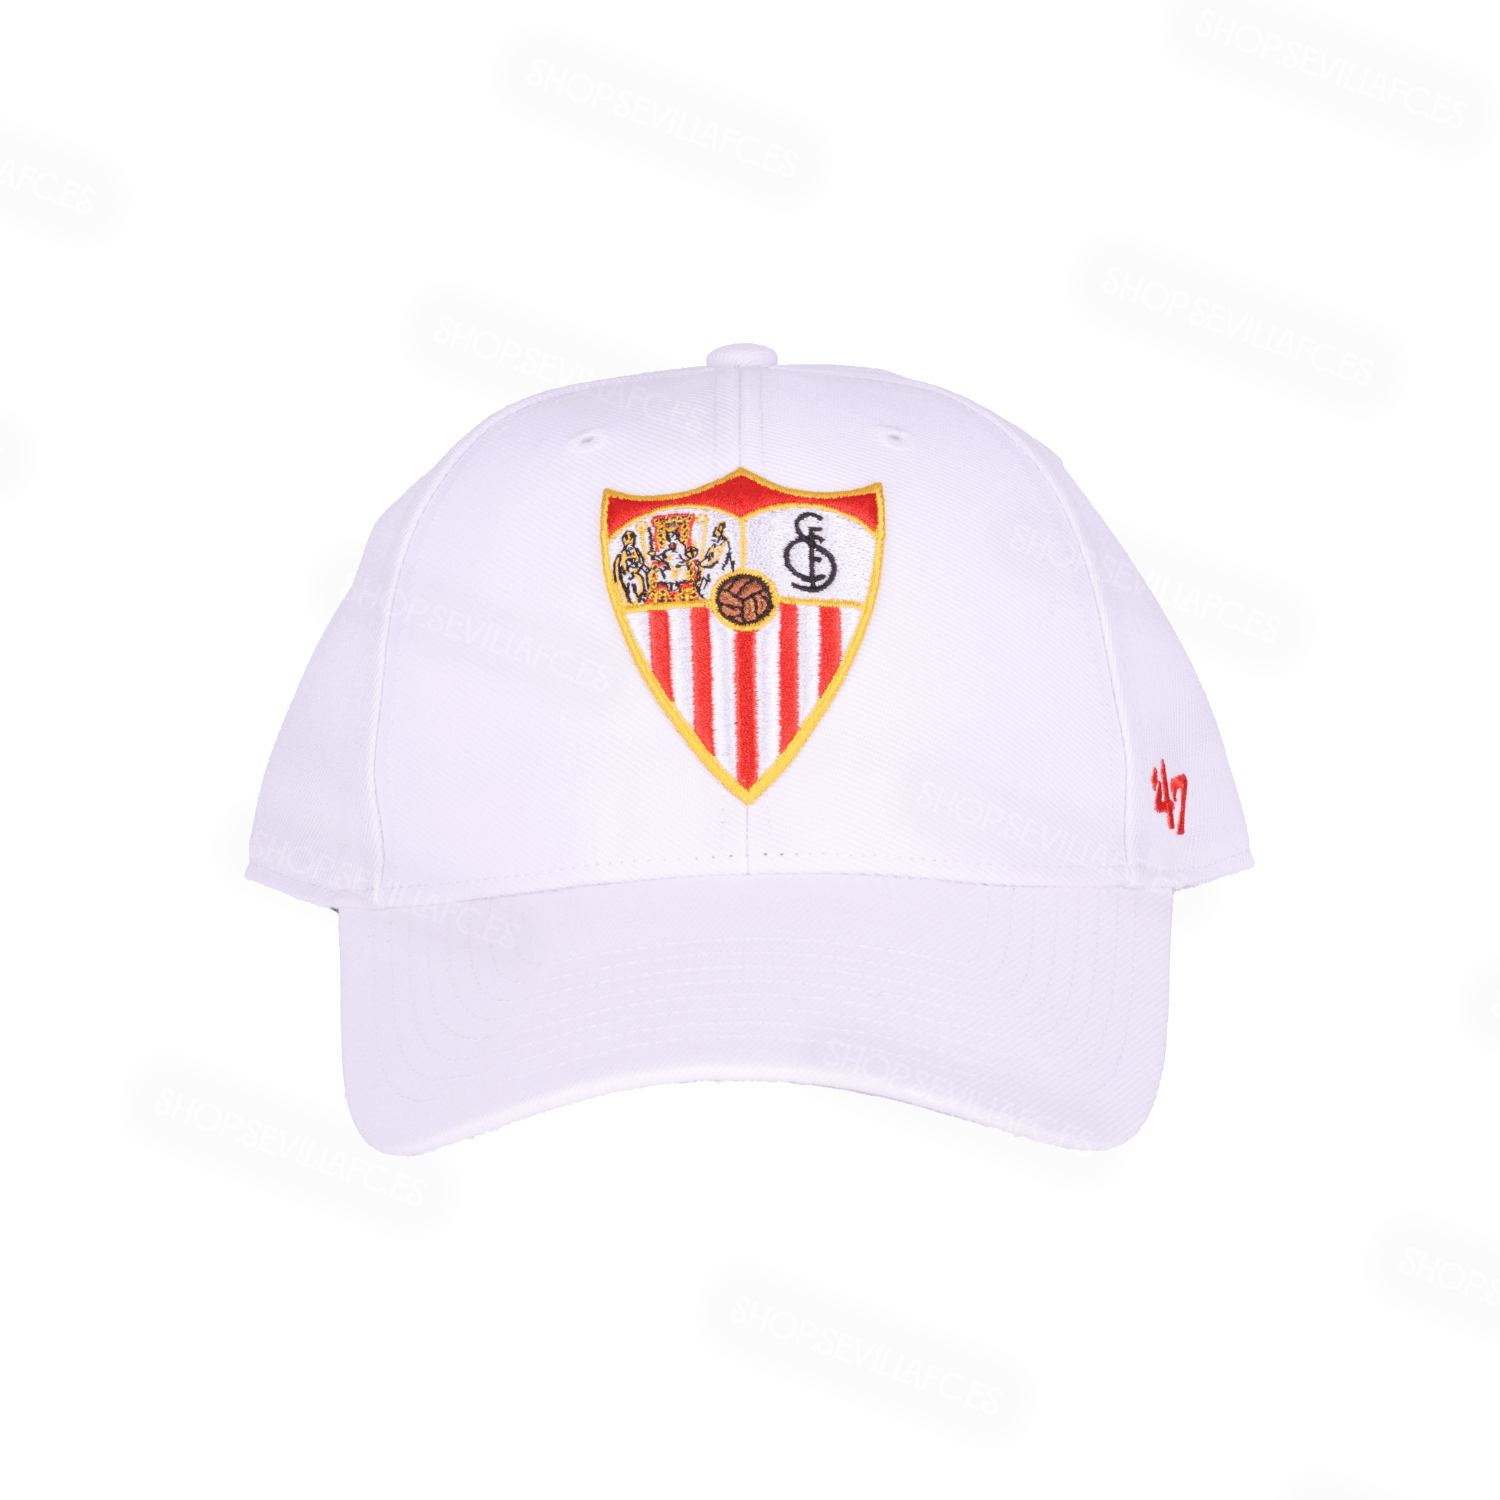 Junior white cap